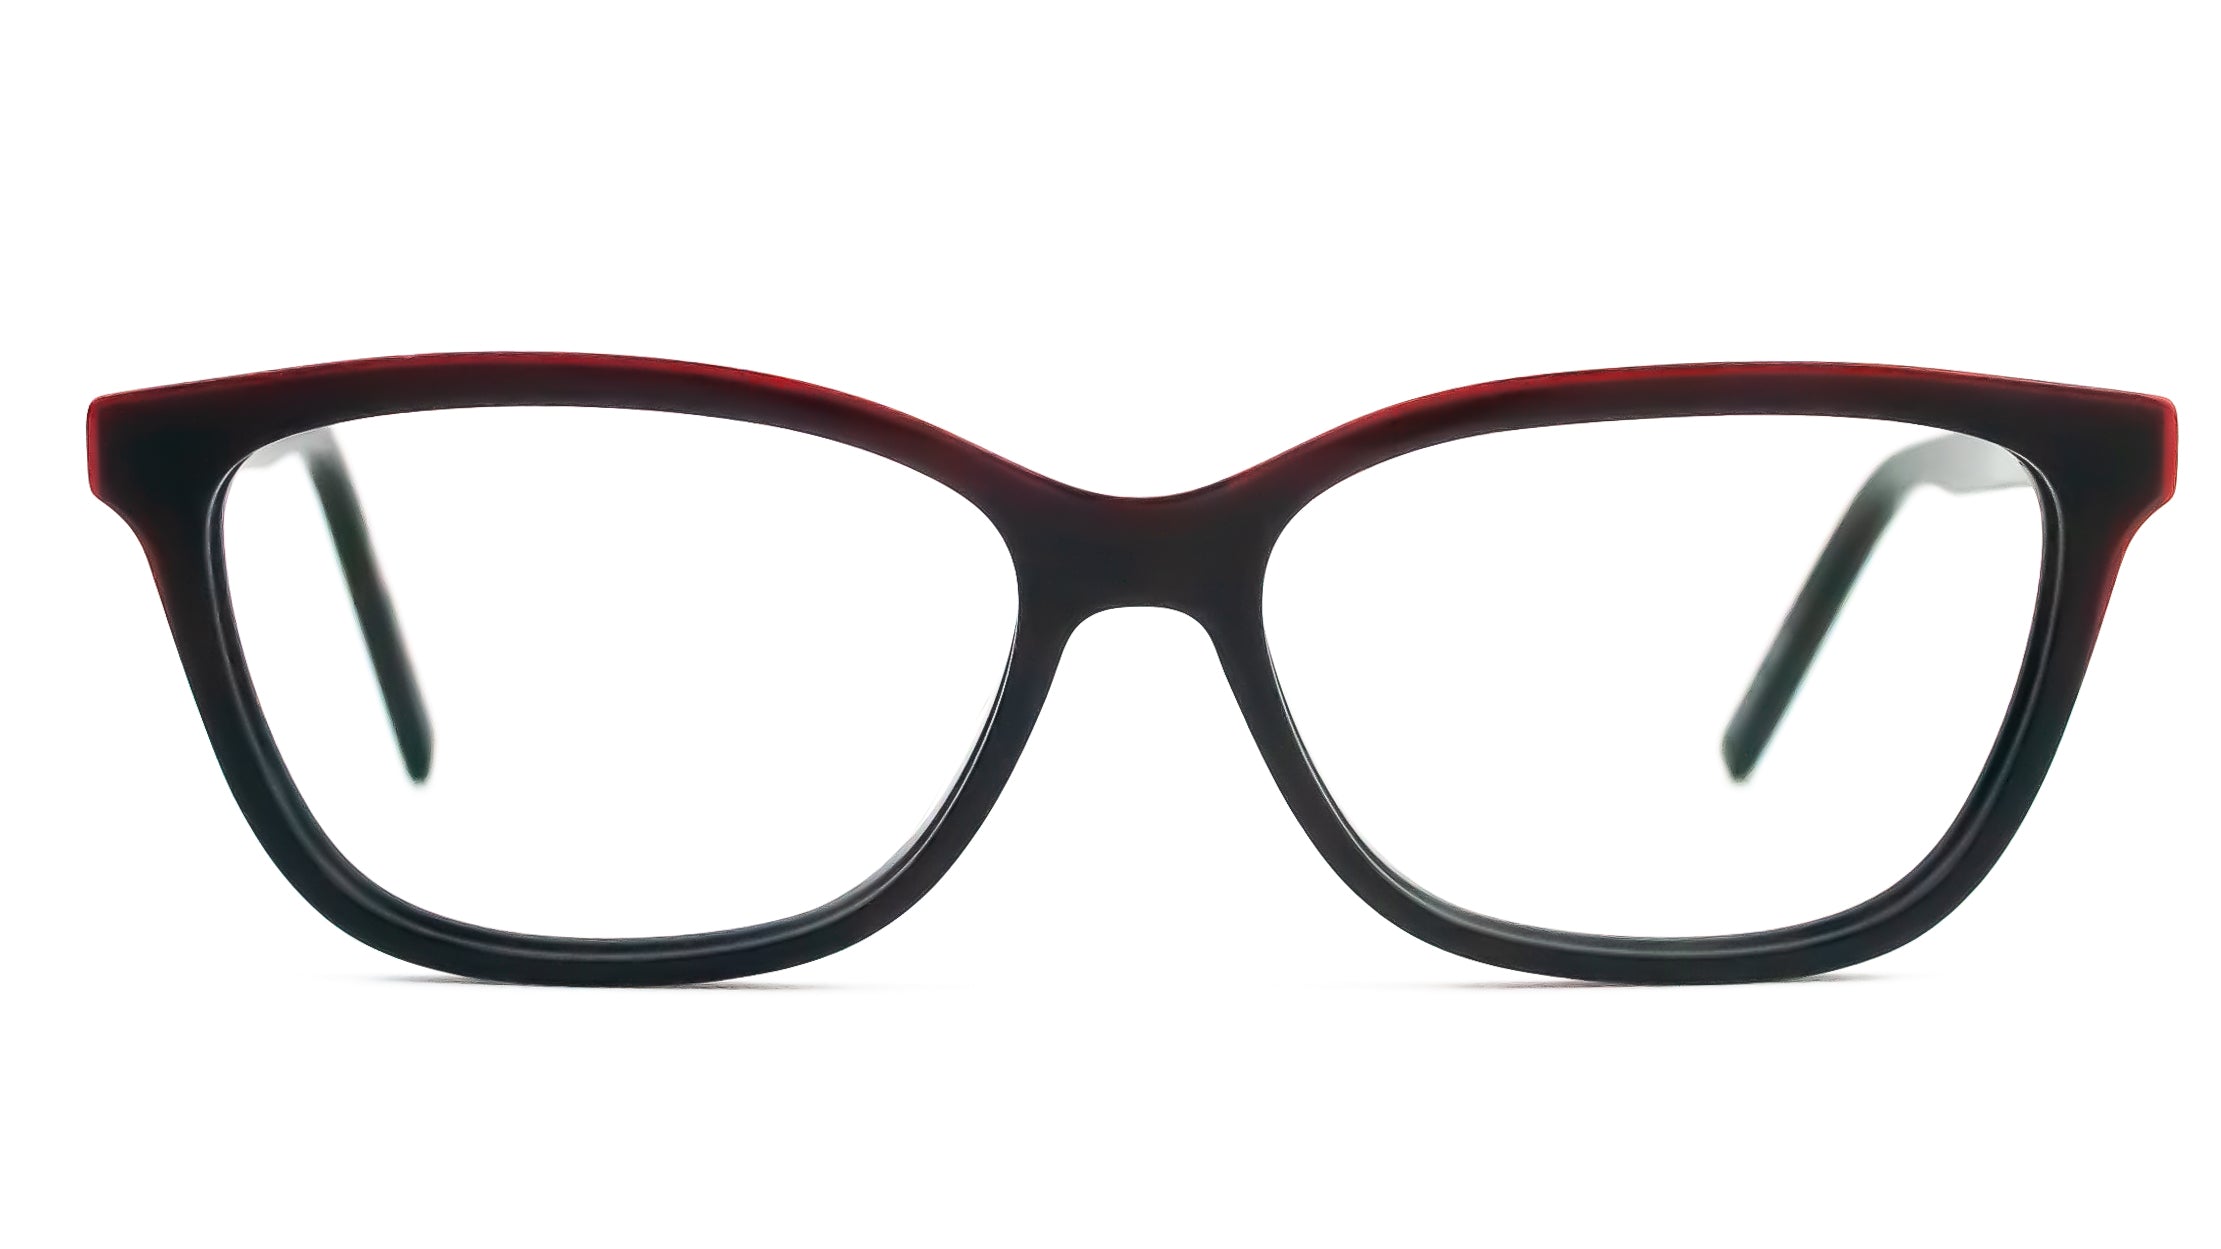 Hugo Boss HG20 glasses frames